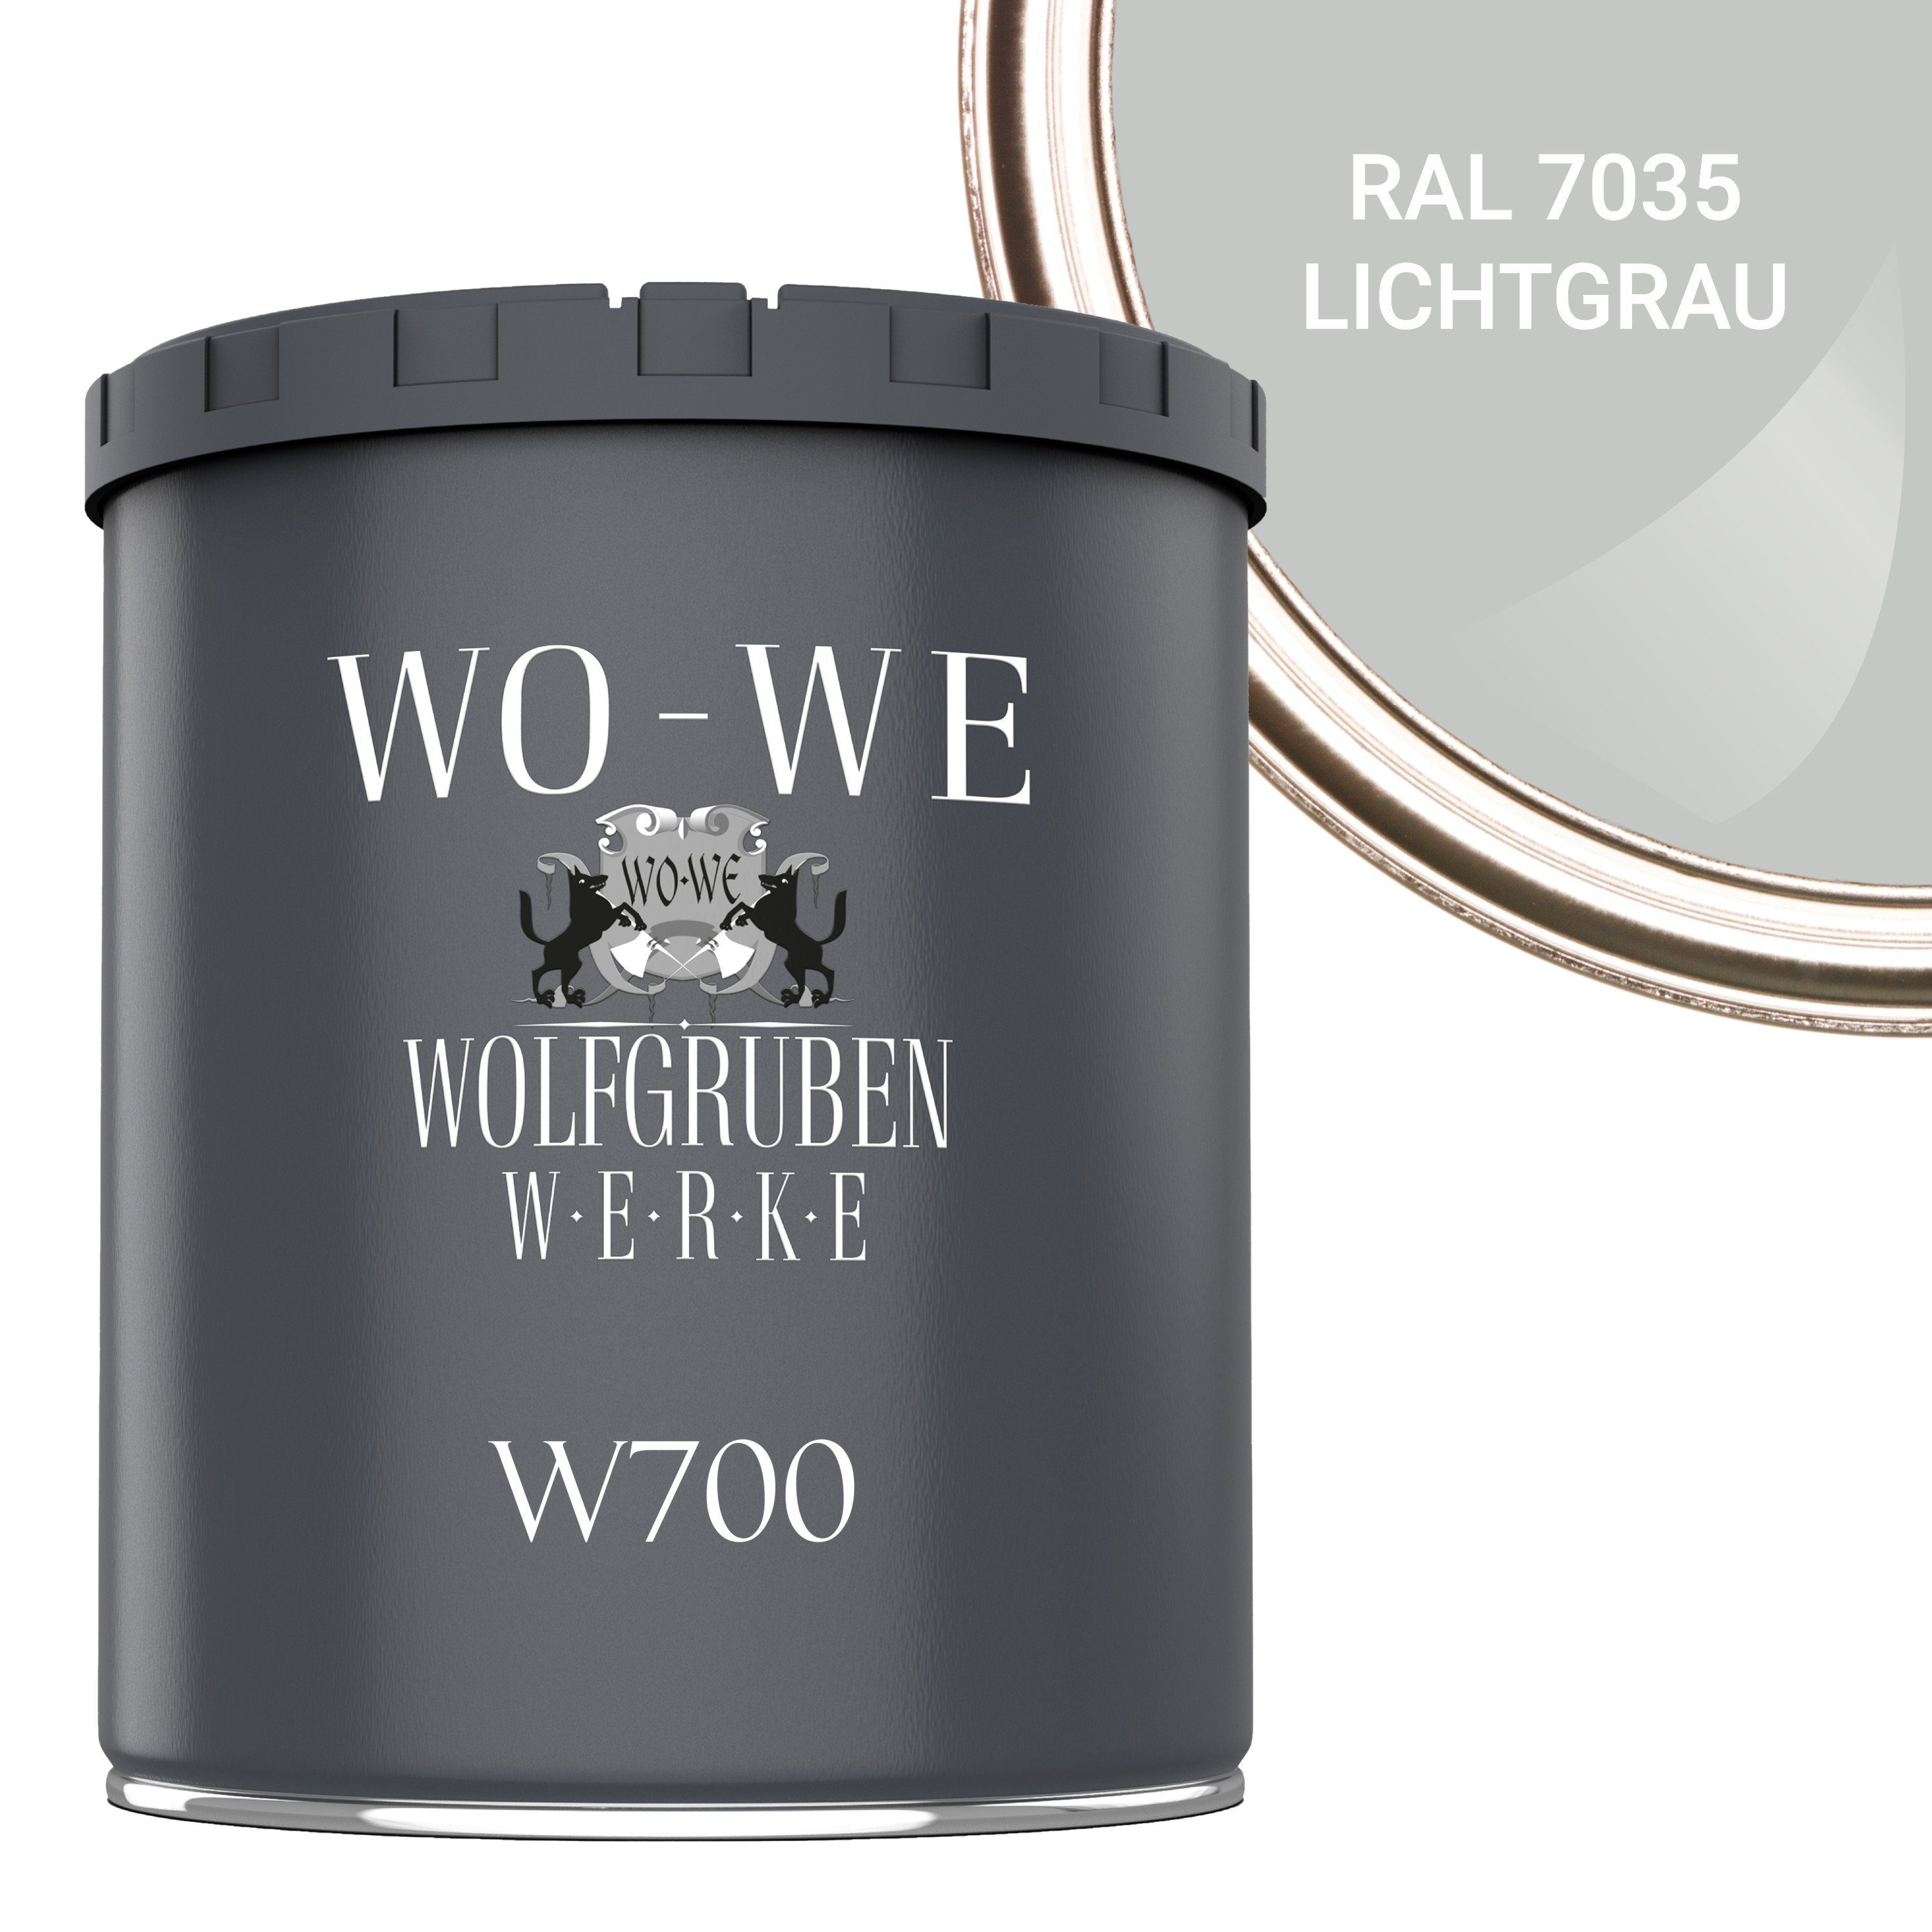 WO-WE Bodenversiegelung Betonfarbe Bodenfarbe Bodenbeschichtung W700, 1-10L, Seidenglänzend RAL 7035 Lichtgrau